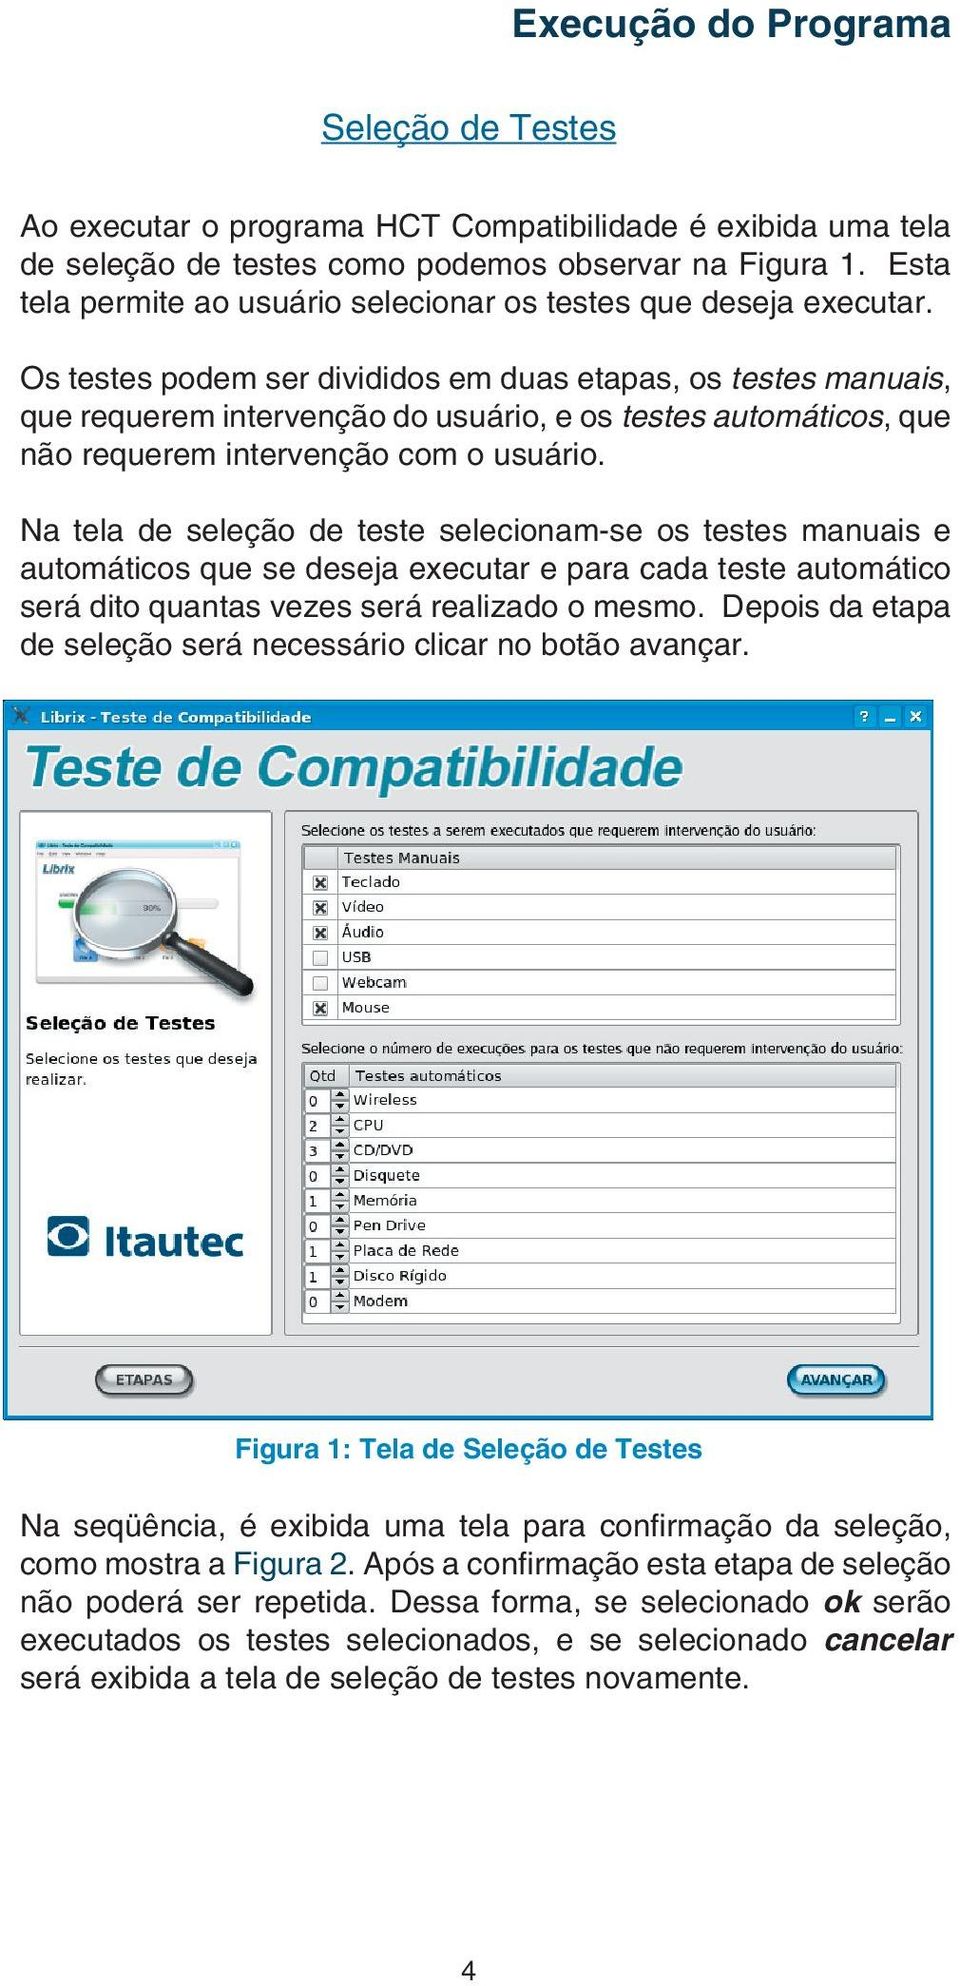 Os testes podem ser divididos em duas etapas, os testes manuais, que requerem intervenção do usuário, e os testes automáticos, que não requerem intervenção com o usuário.